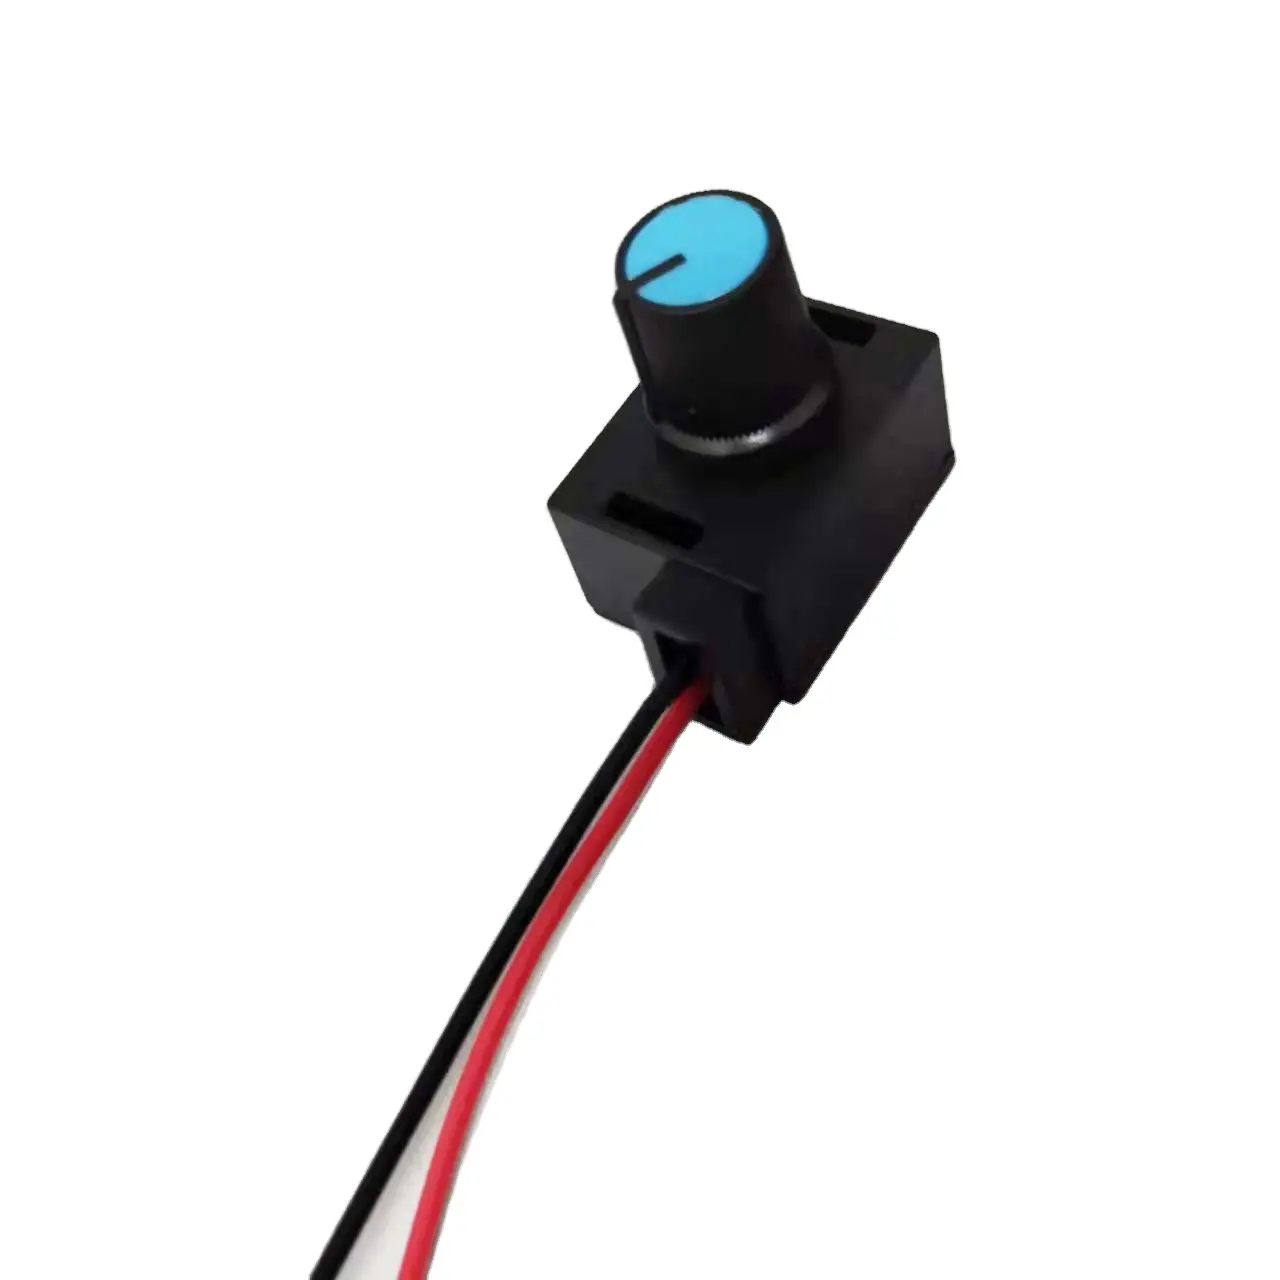 0/1-10V 노브 미니 조광기 컨트롤러 35cm 1007 20AWG LED 조명 인테리어 조명 조도 조절이 가능한 성장 램프